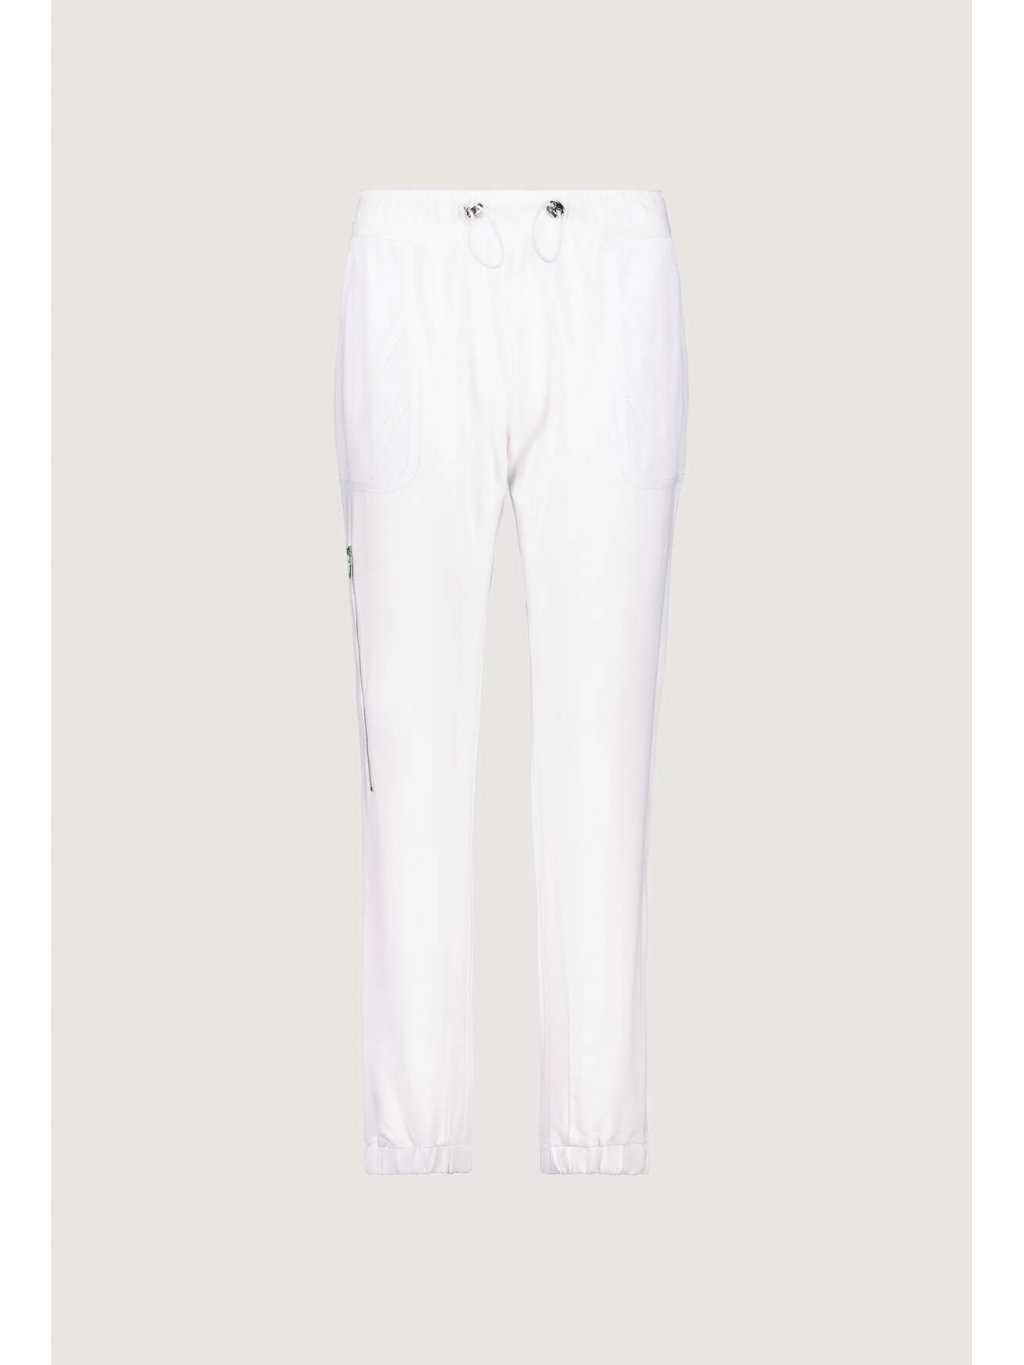 Kalhoty Monari 7030 bílé se síťovanou kapsou